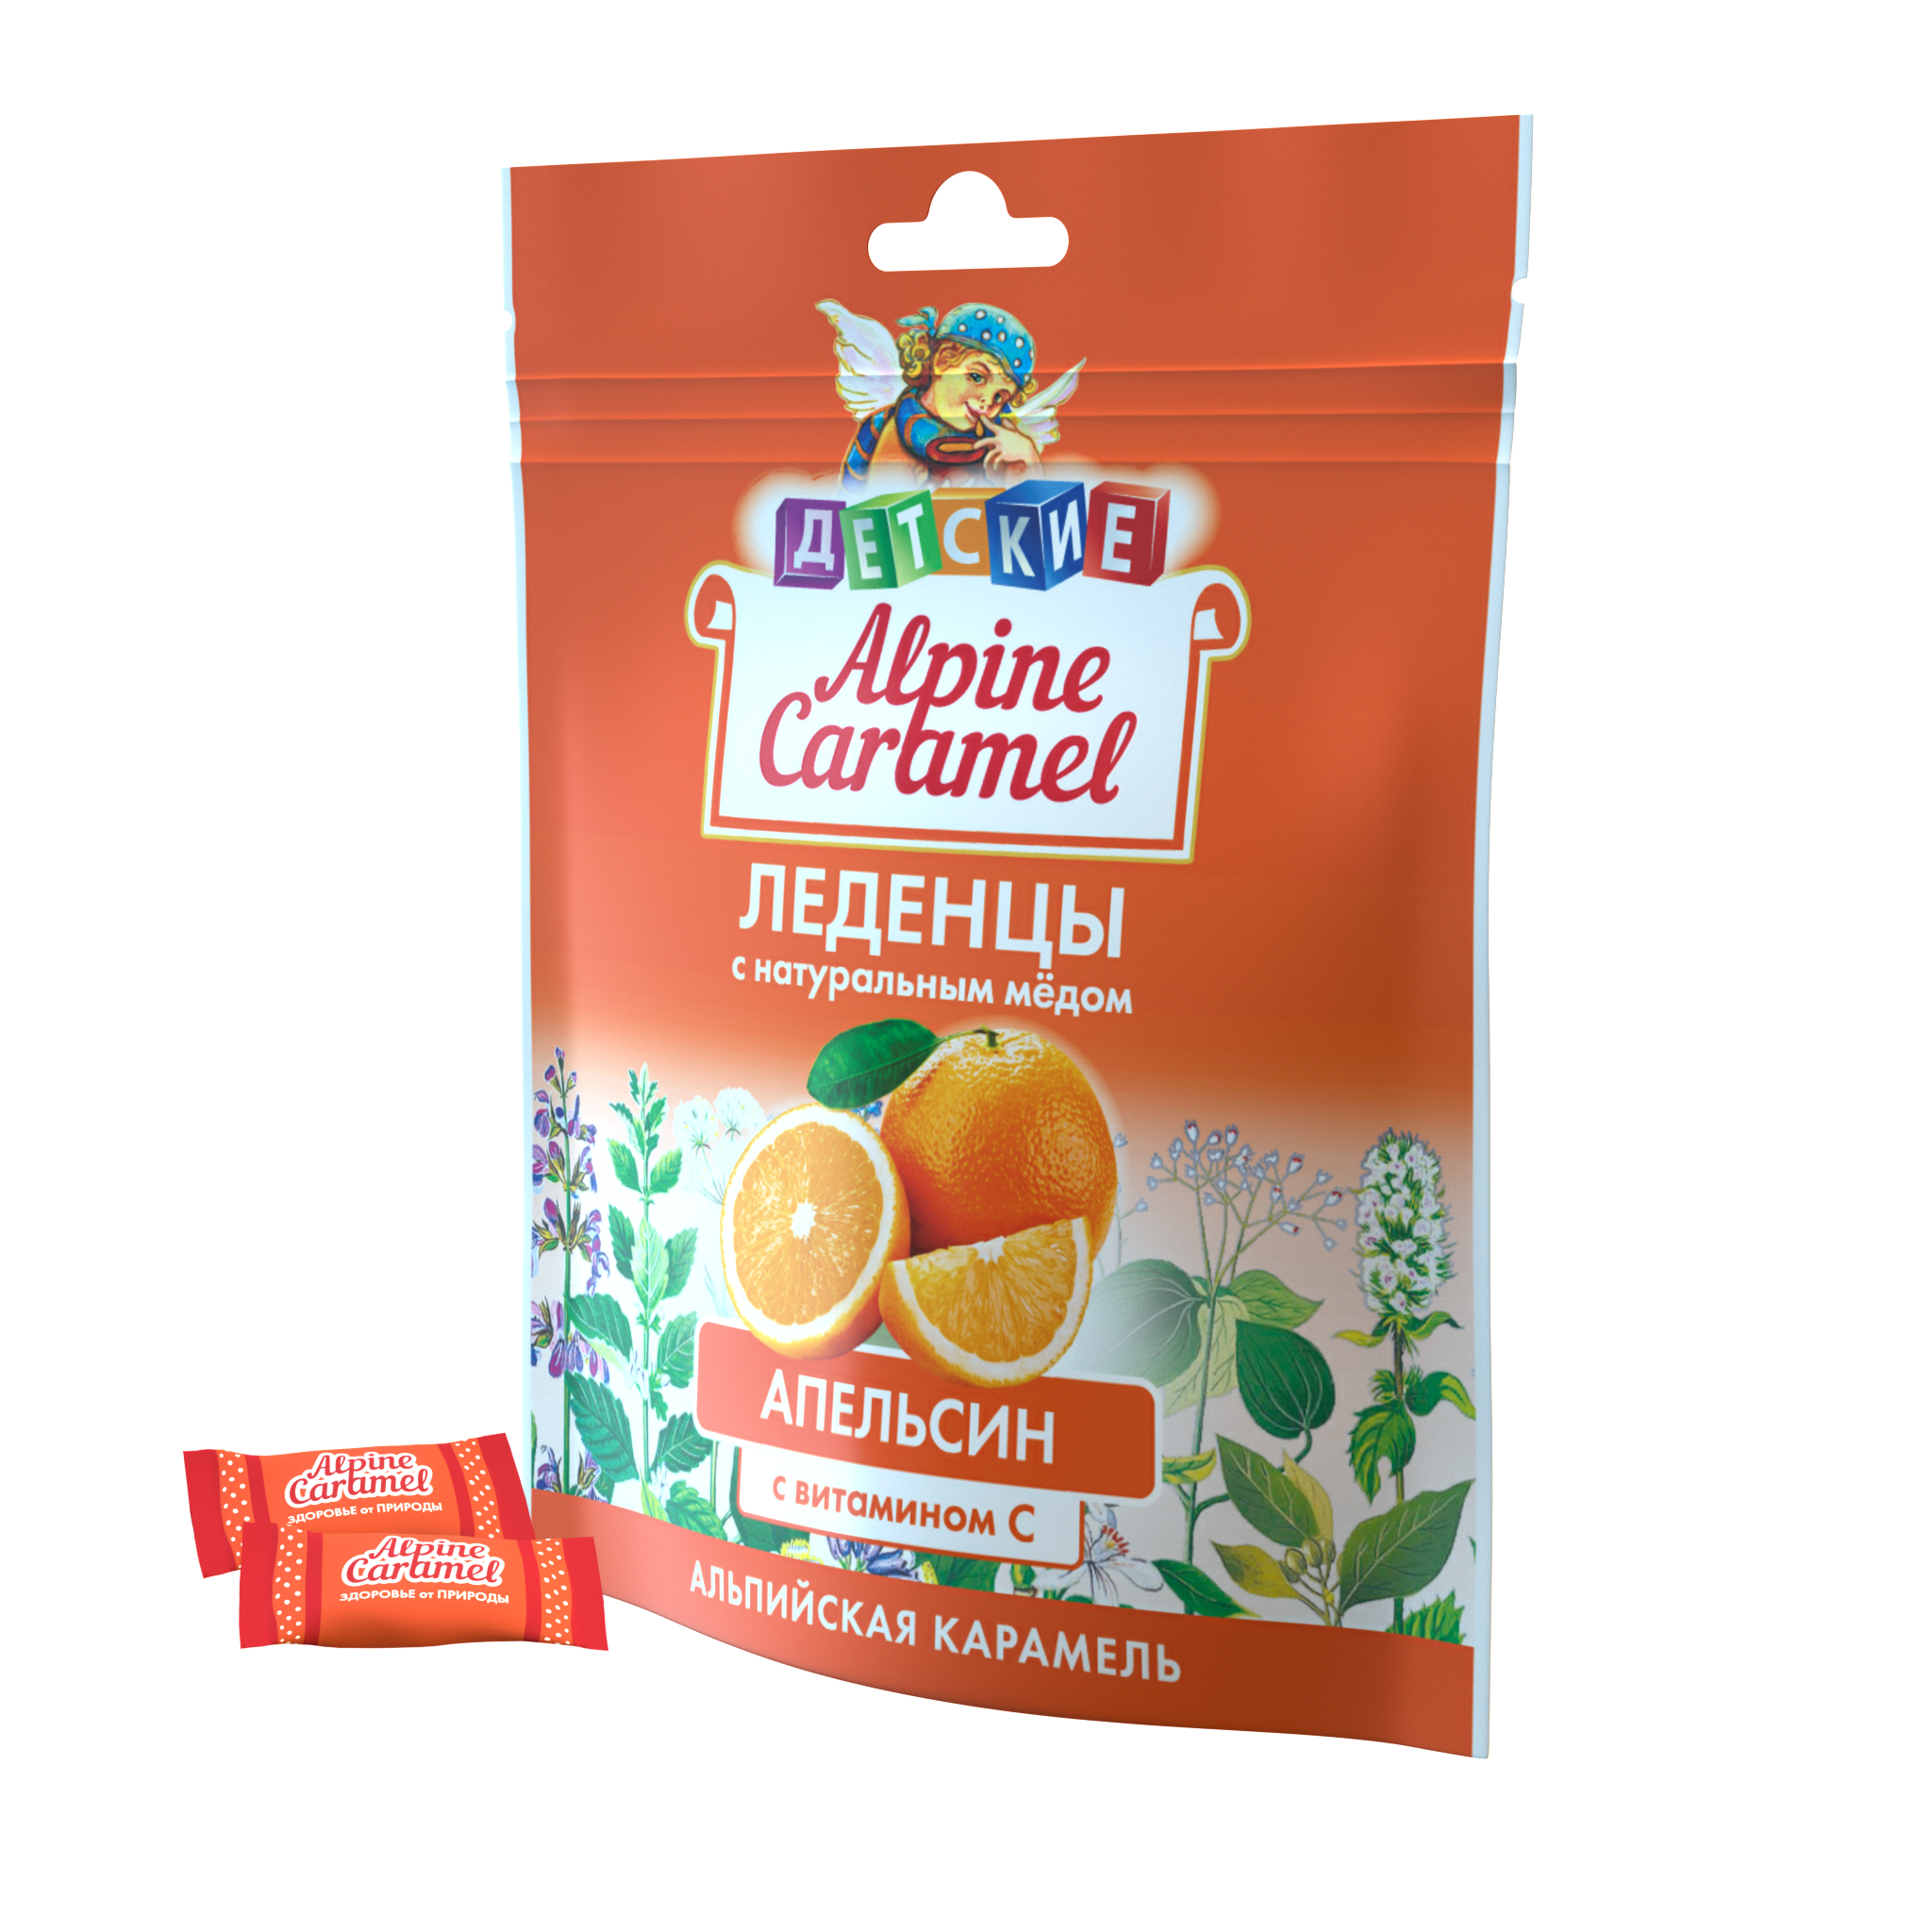 Alpine Caramel Альпийская Карамель леденцы дет (апельсин с медом и витамином С), 75 г шопенгауэр как лекарство